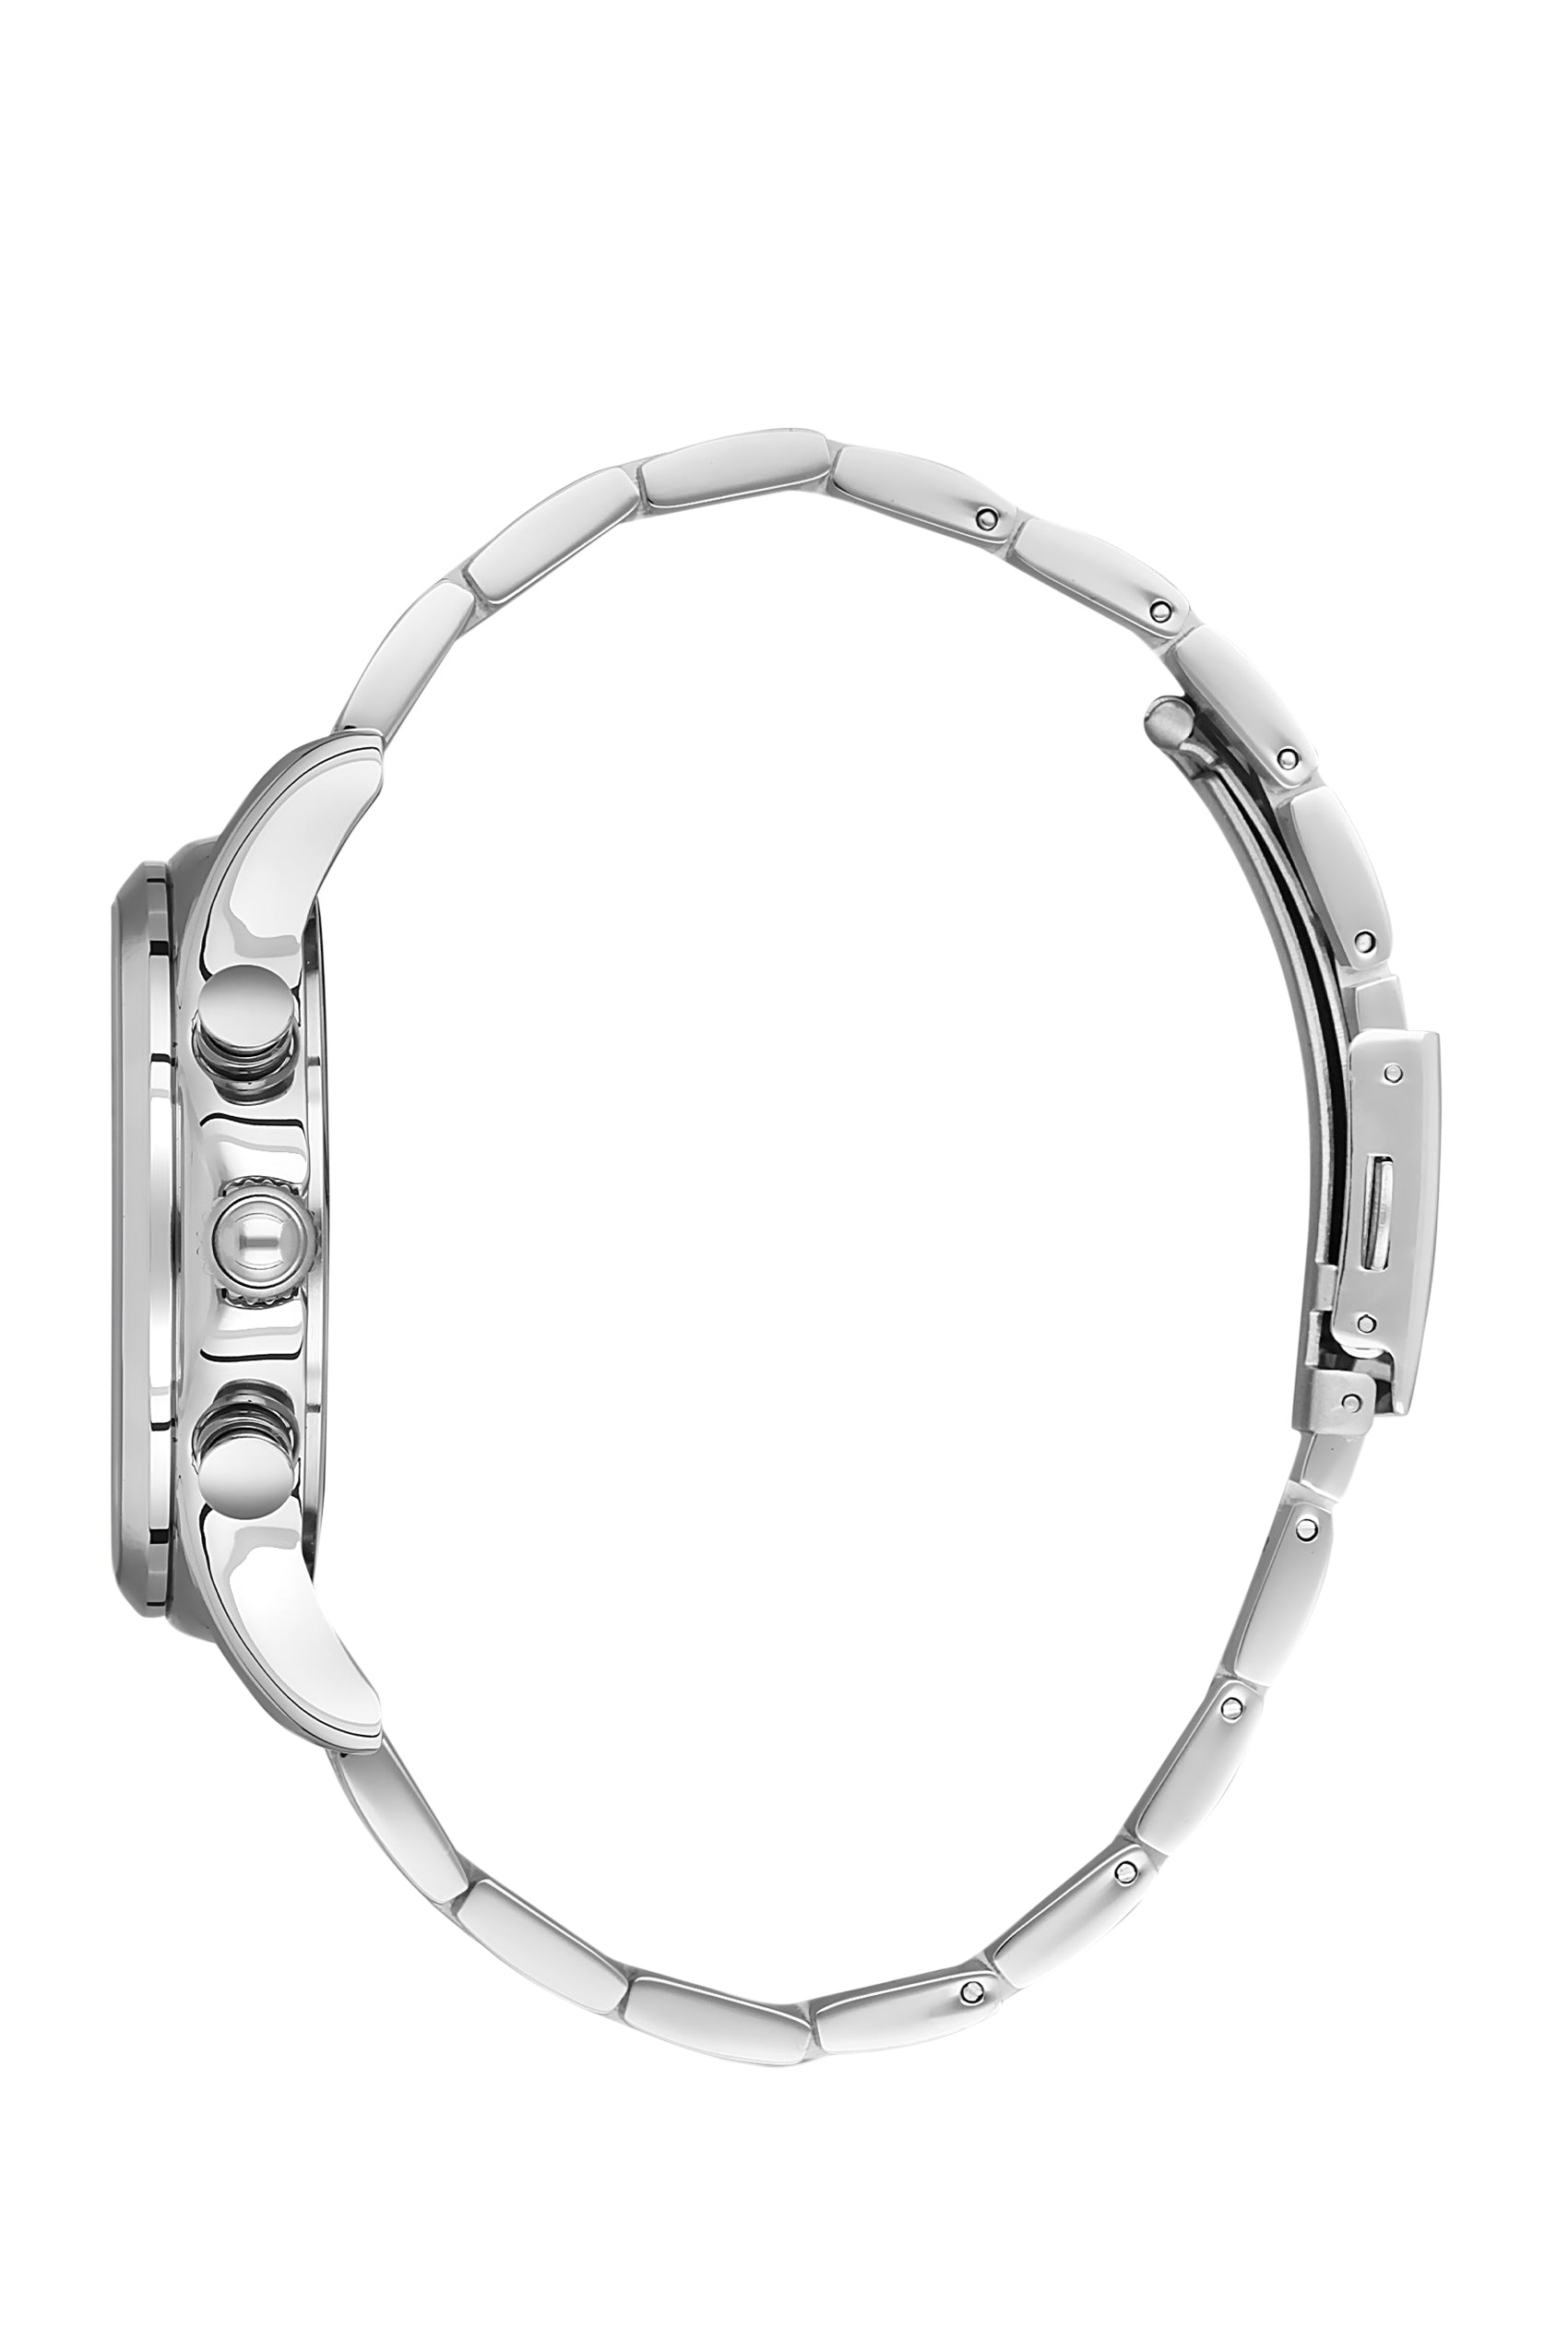 Slazenger - SL.9.6534.2.04 - Stainless Steel Watch For Men